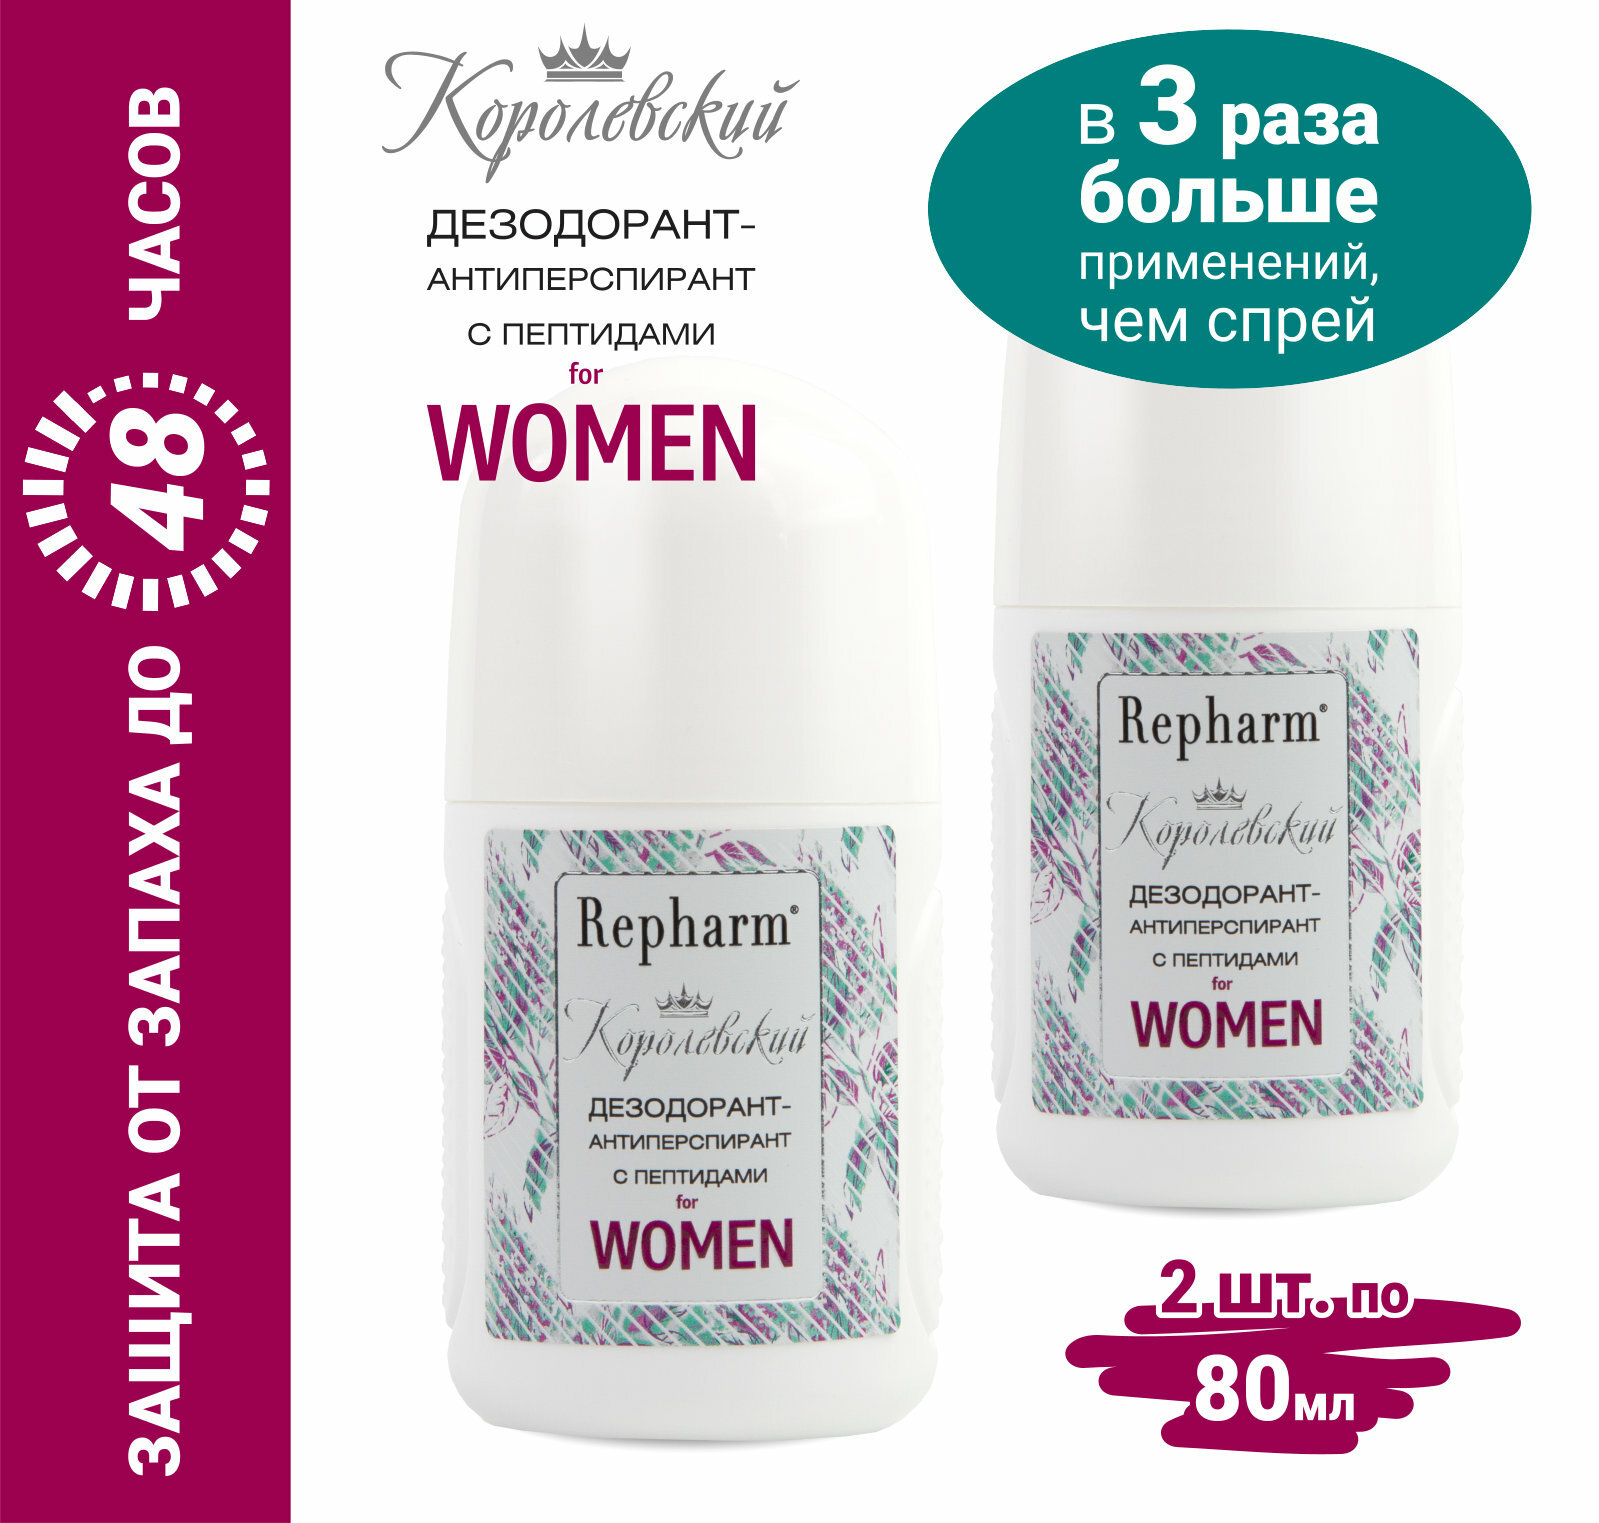 Дезодорант-антиперспирант Repharm Королевский с пептидами for women, 80 мл - 2 шт